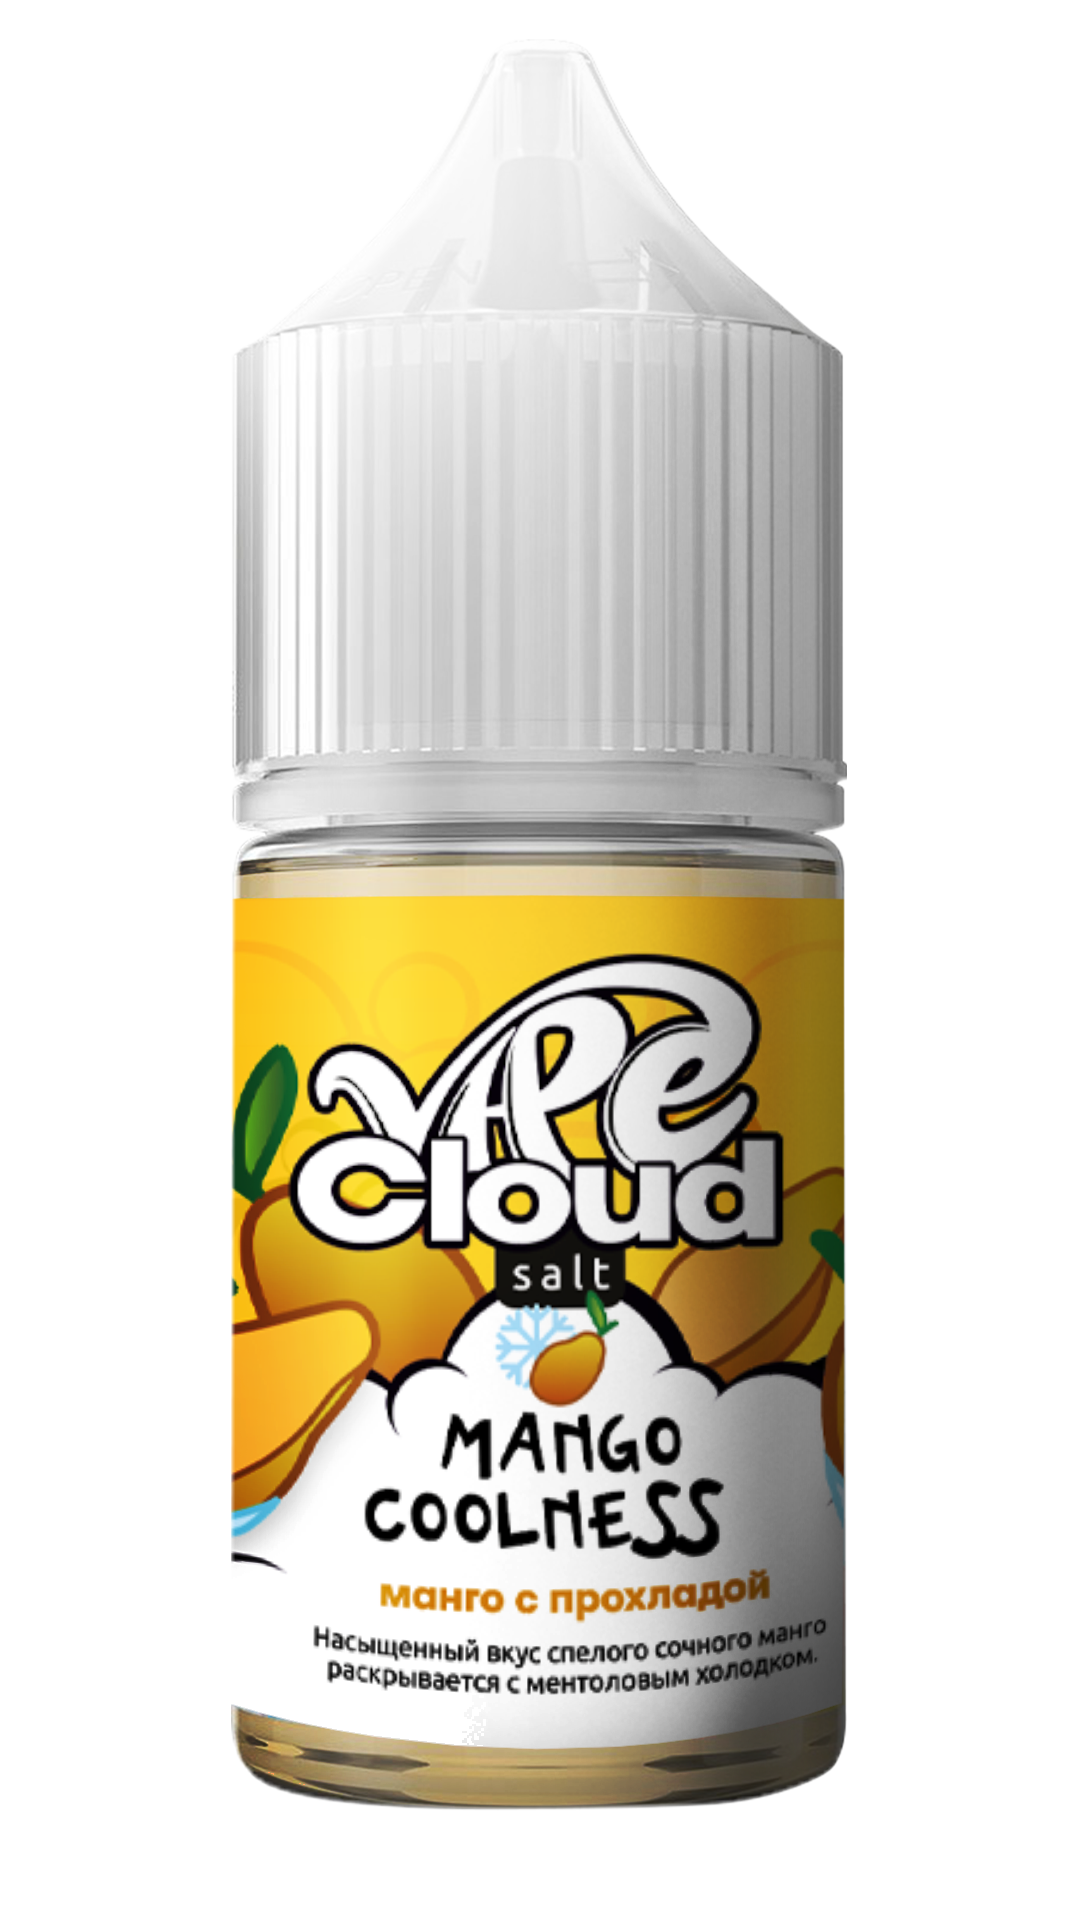 Vape Cloud / Манго с прохладой